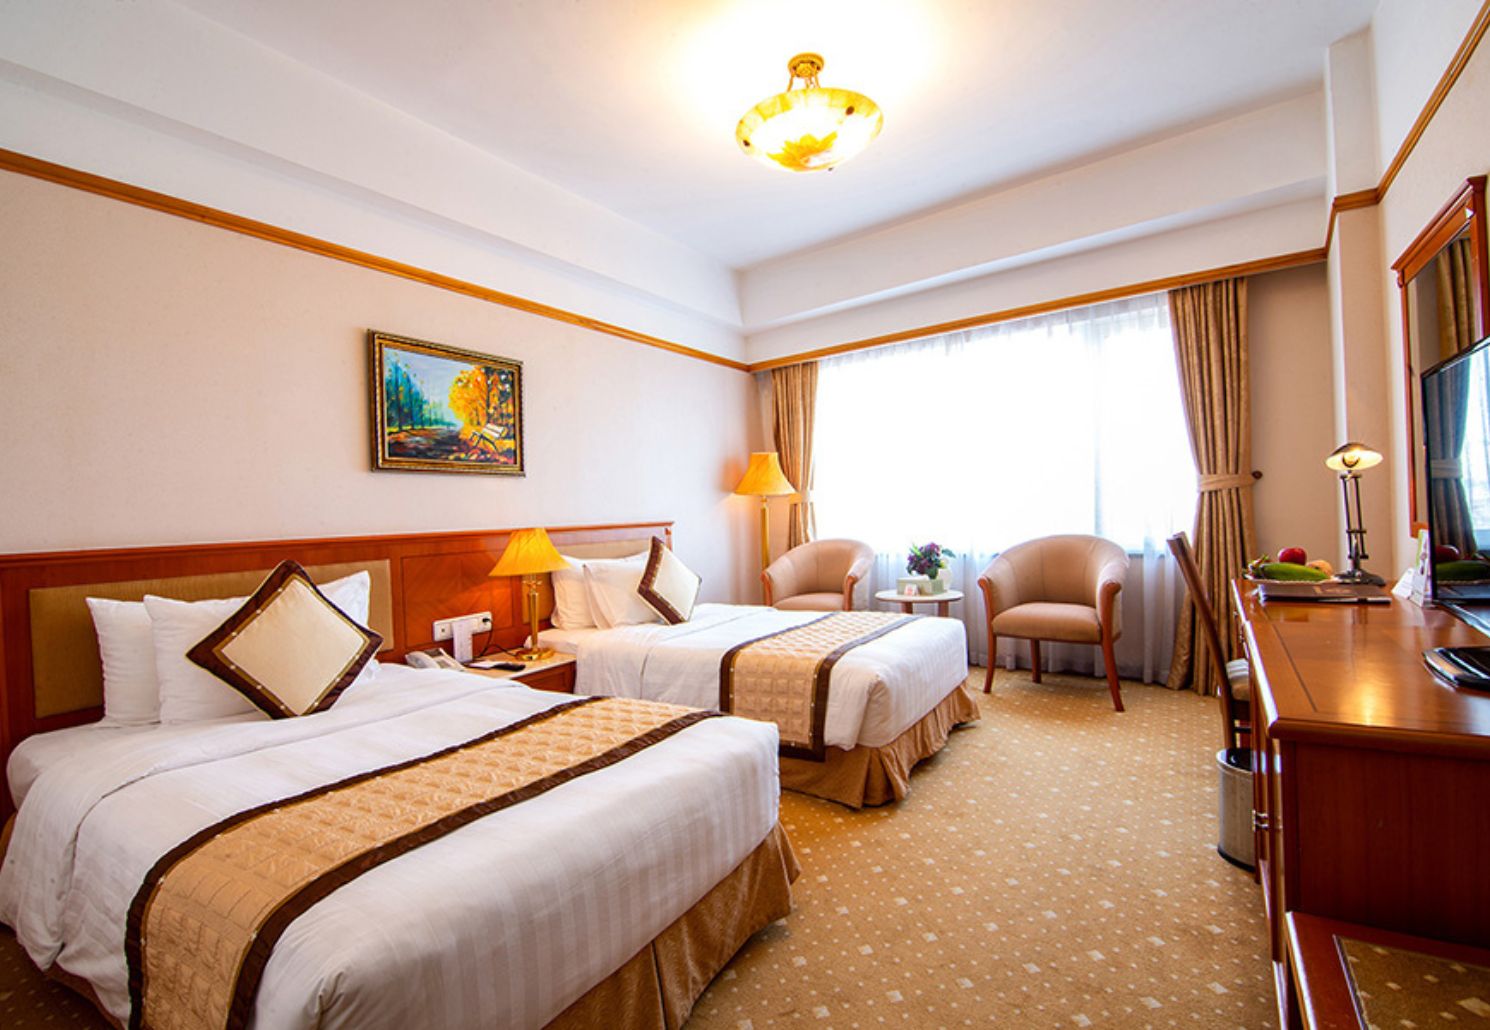 A25 Hotel and Spa, lựa chọn hoàn hảo cho kì nghỉ tại Thủ đô 5